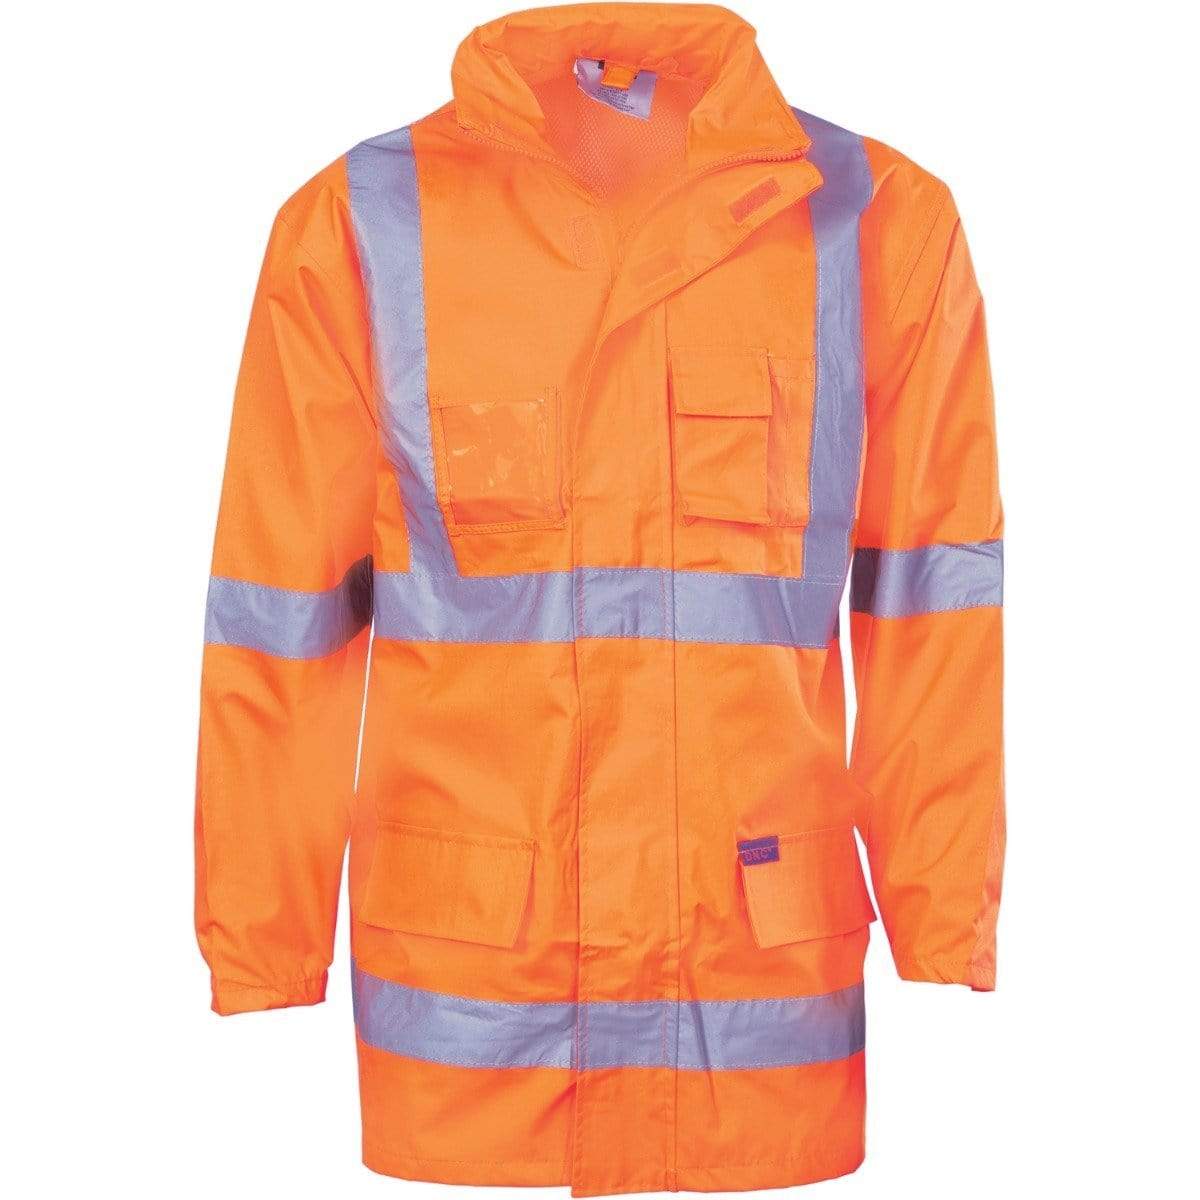 Dnc Workwear Hi-vis Cross-back D/n 2-in-1 Rain Jacket - 3995 Work Wear DNC Workwear Orange XS 